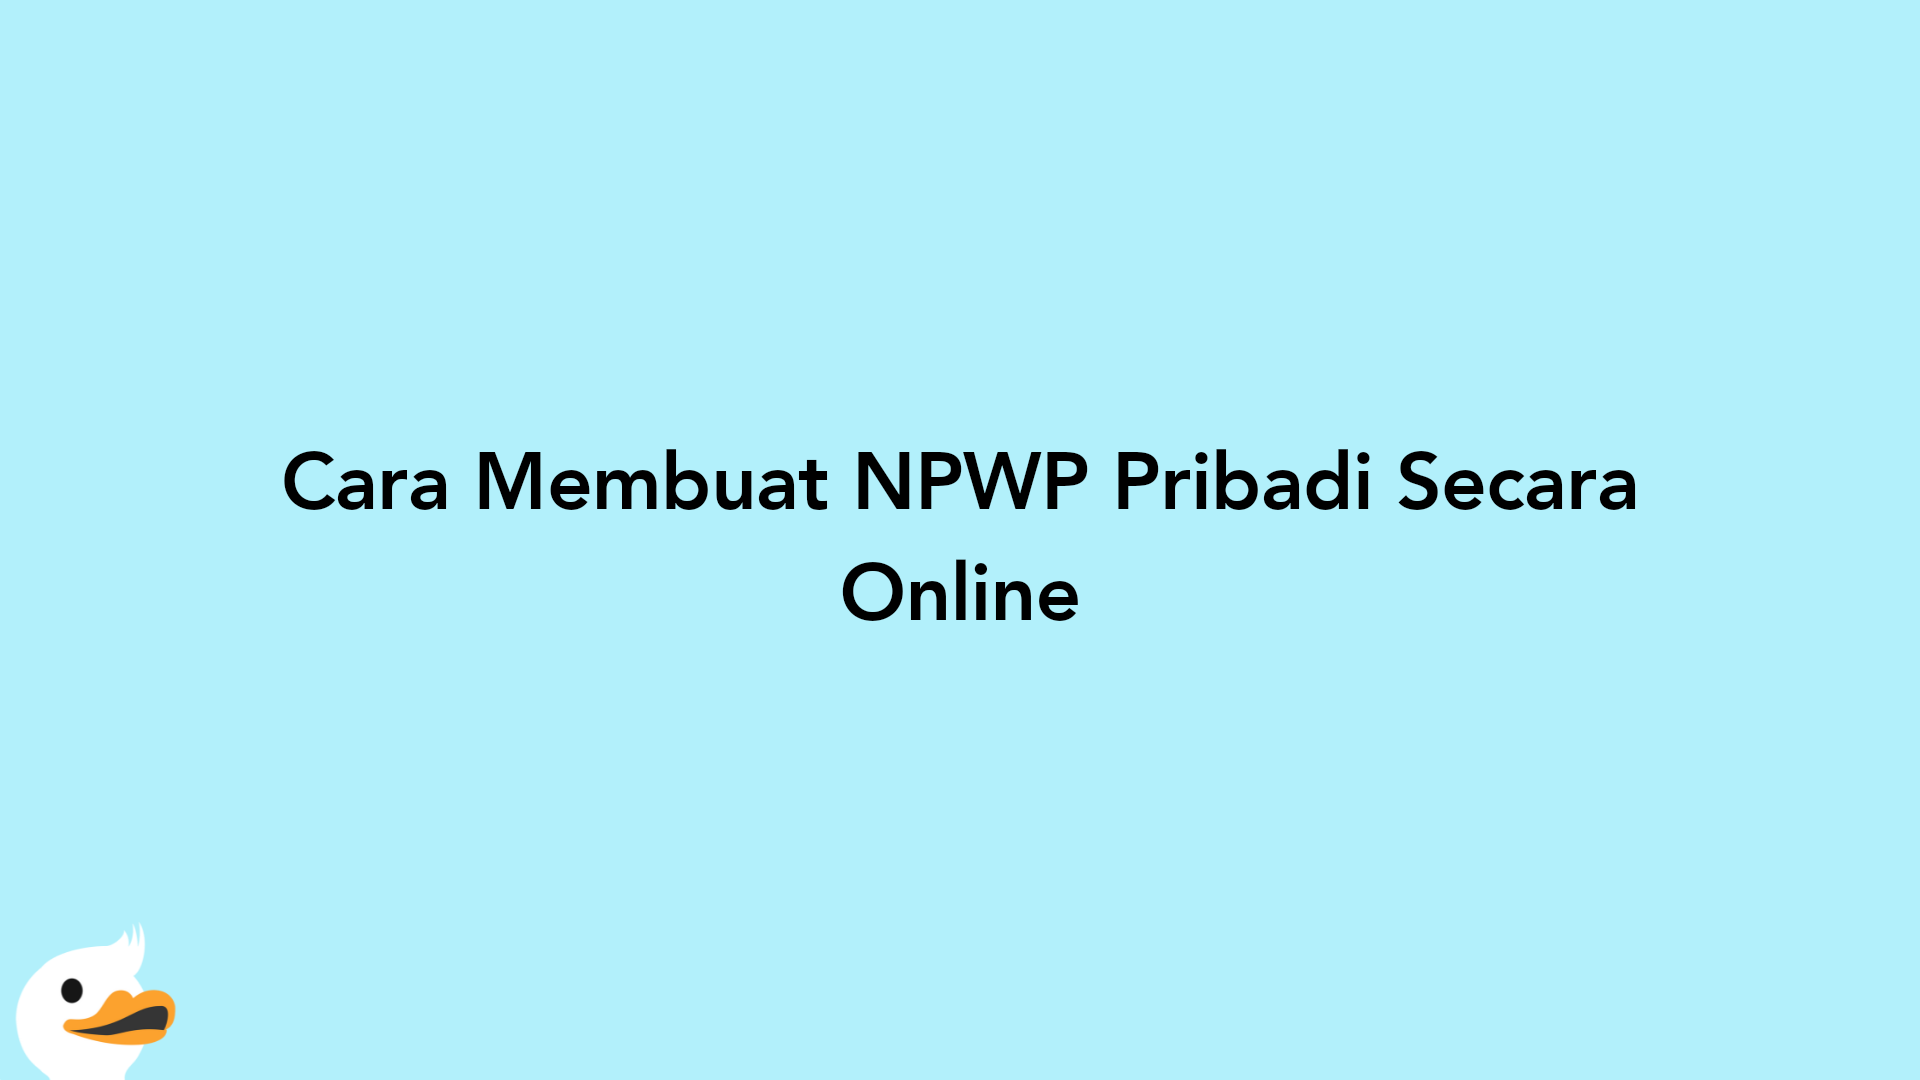 Cara Membuat NPWP Pribadi Secara Online